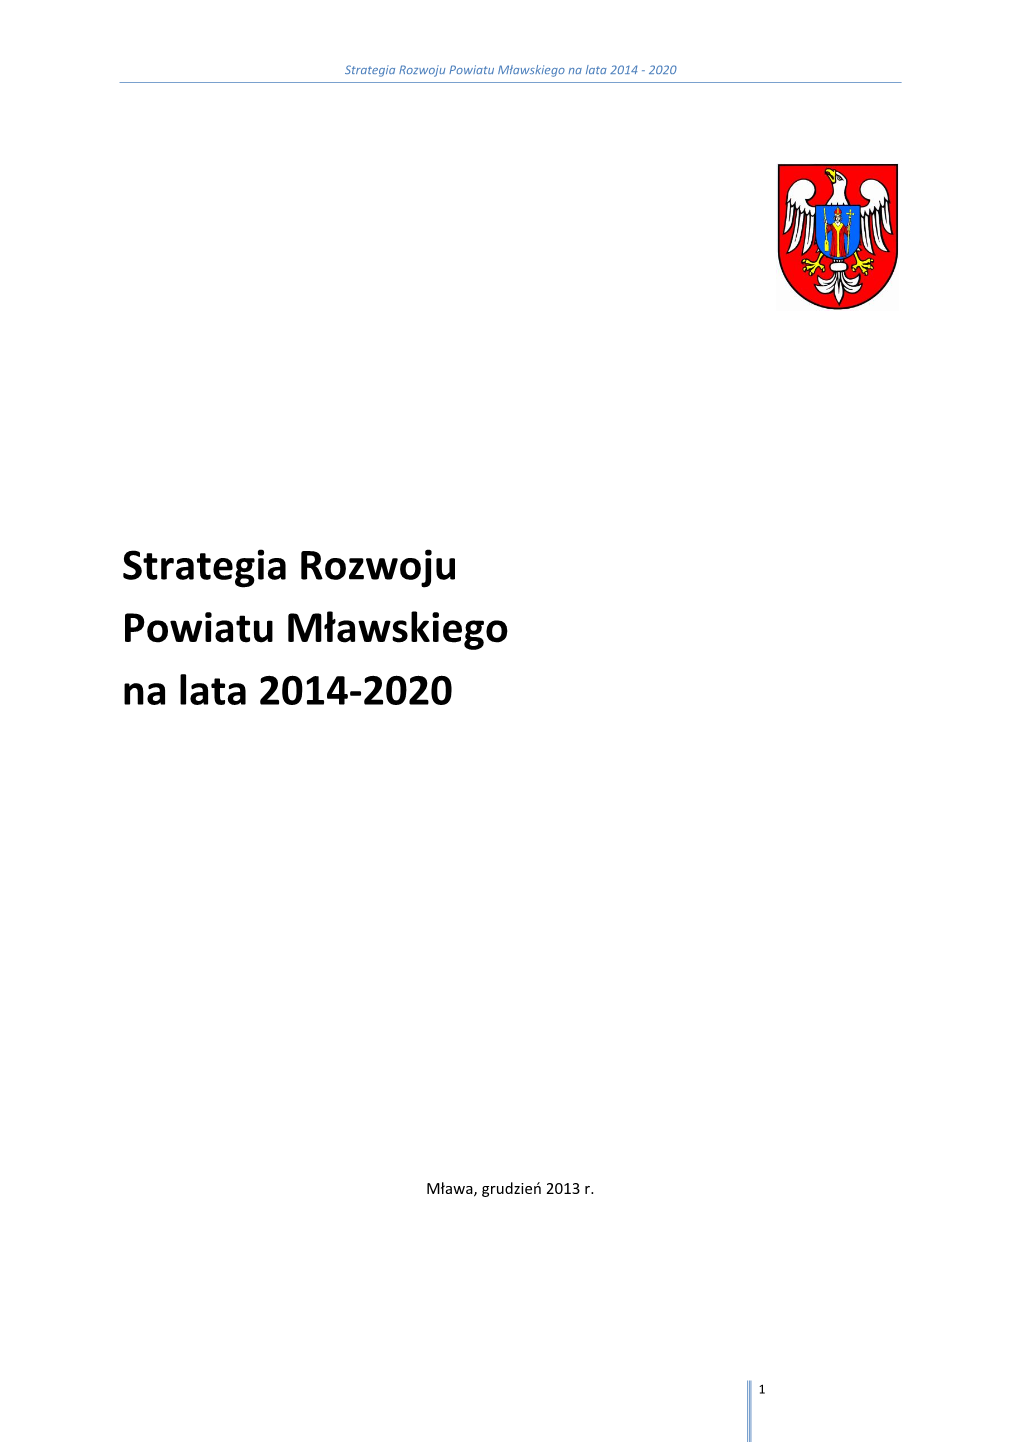 Strategia Rozwoju Powiatu Mławskiego Na Lata 2014 - 2020